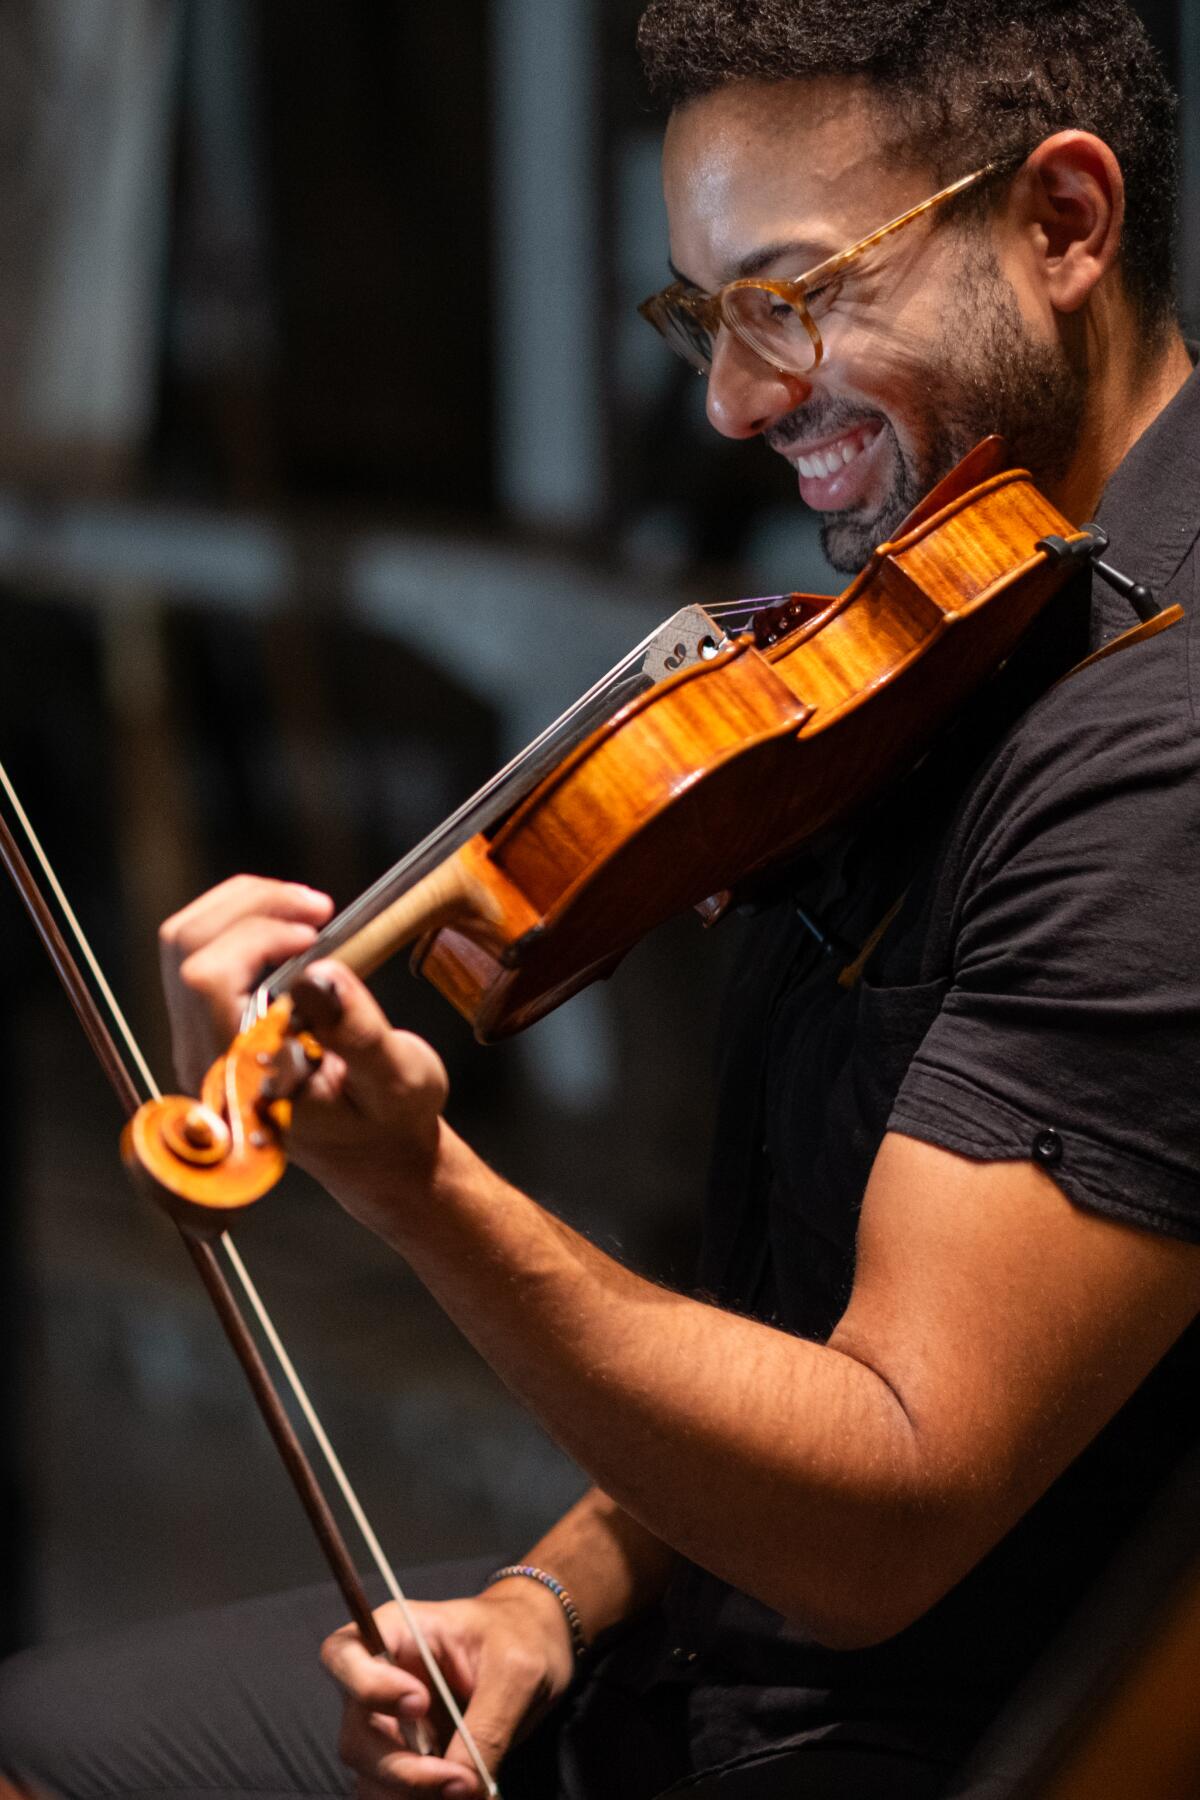 Violinist Kyle Gilner grins while performing with the Zelter String Quartet.